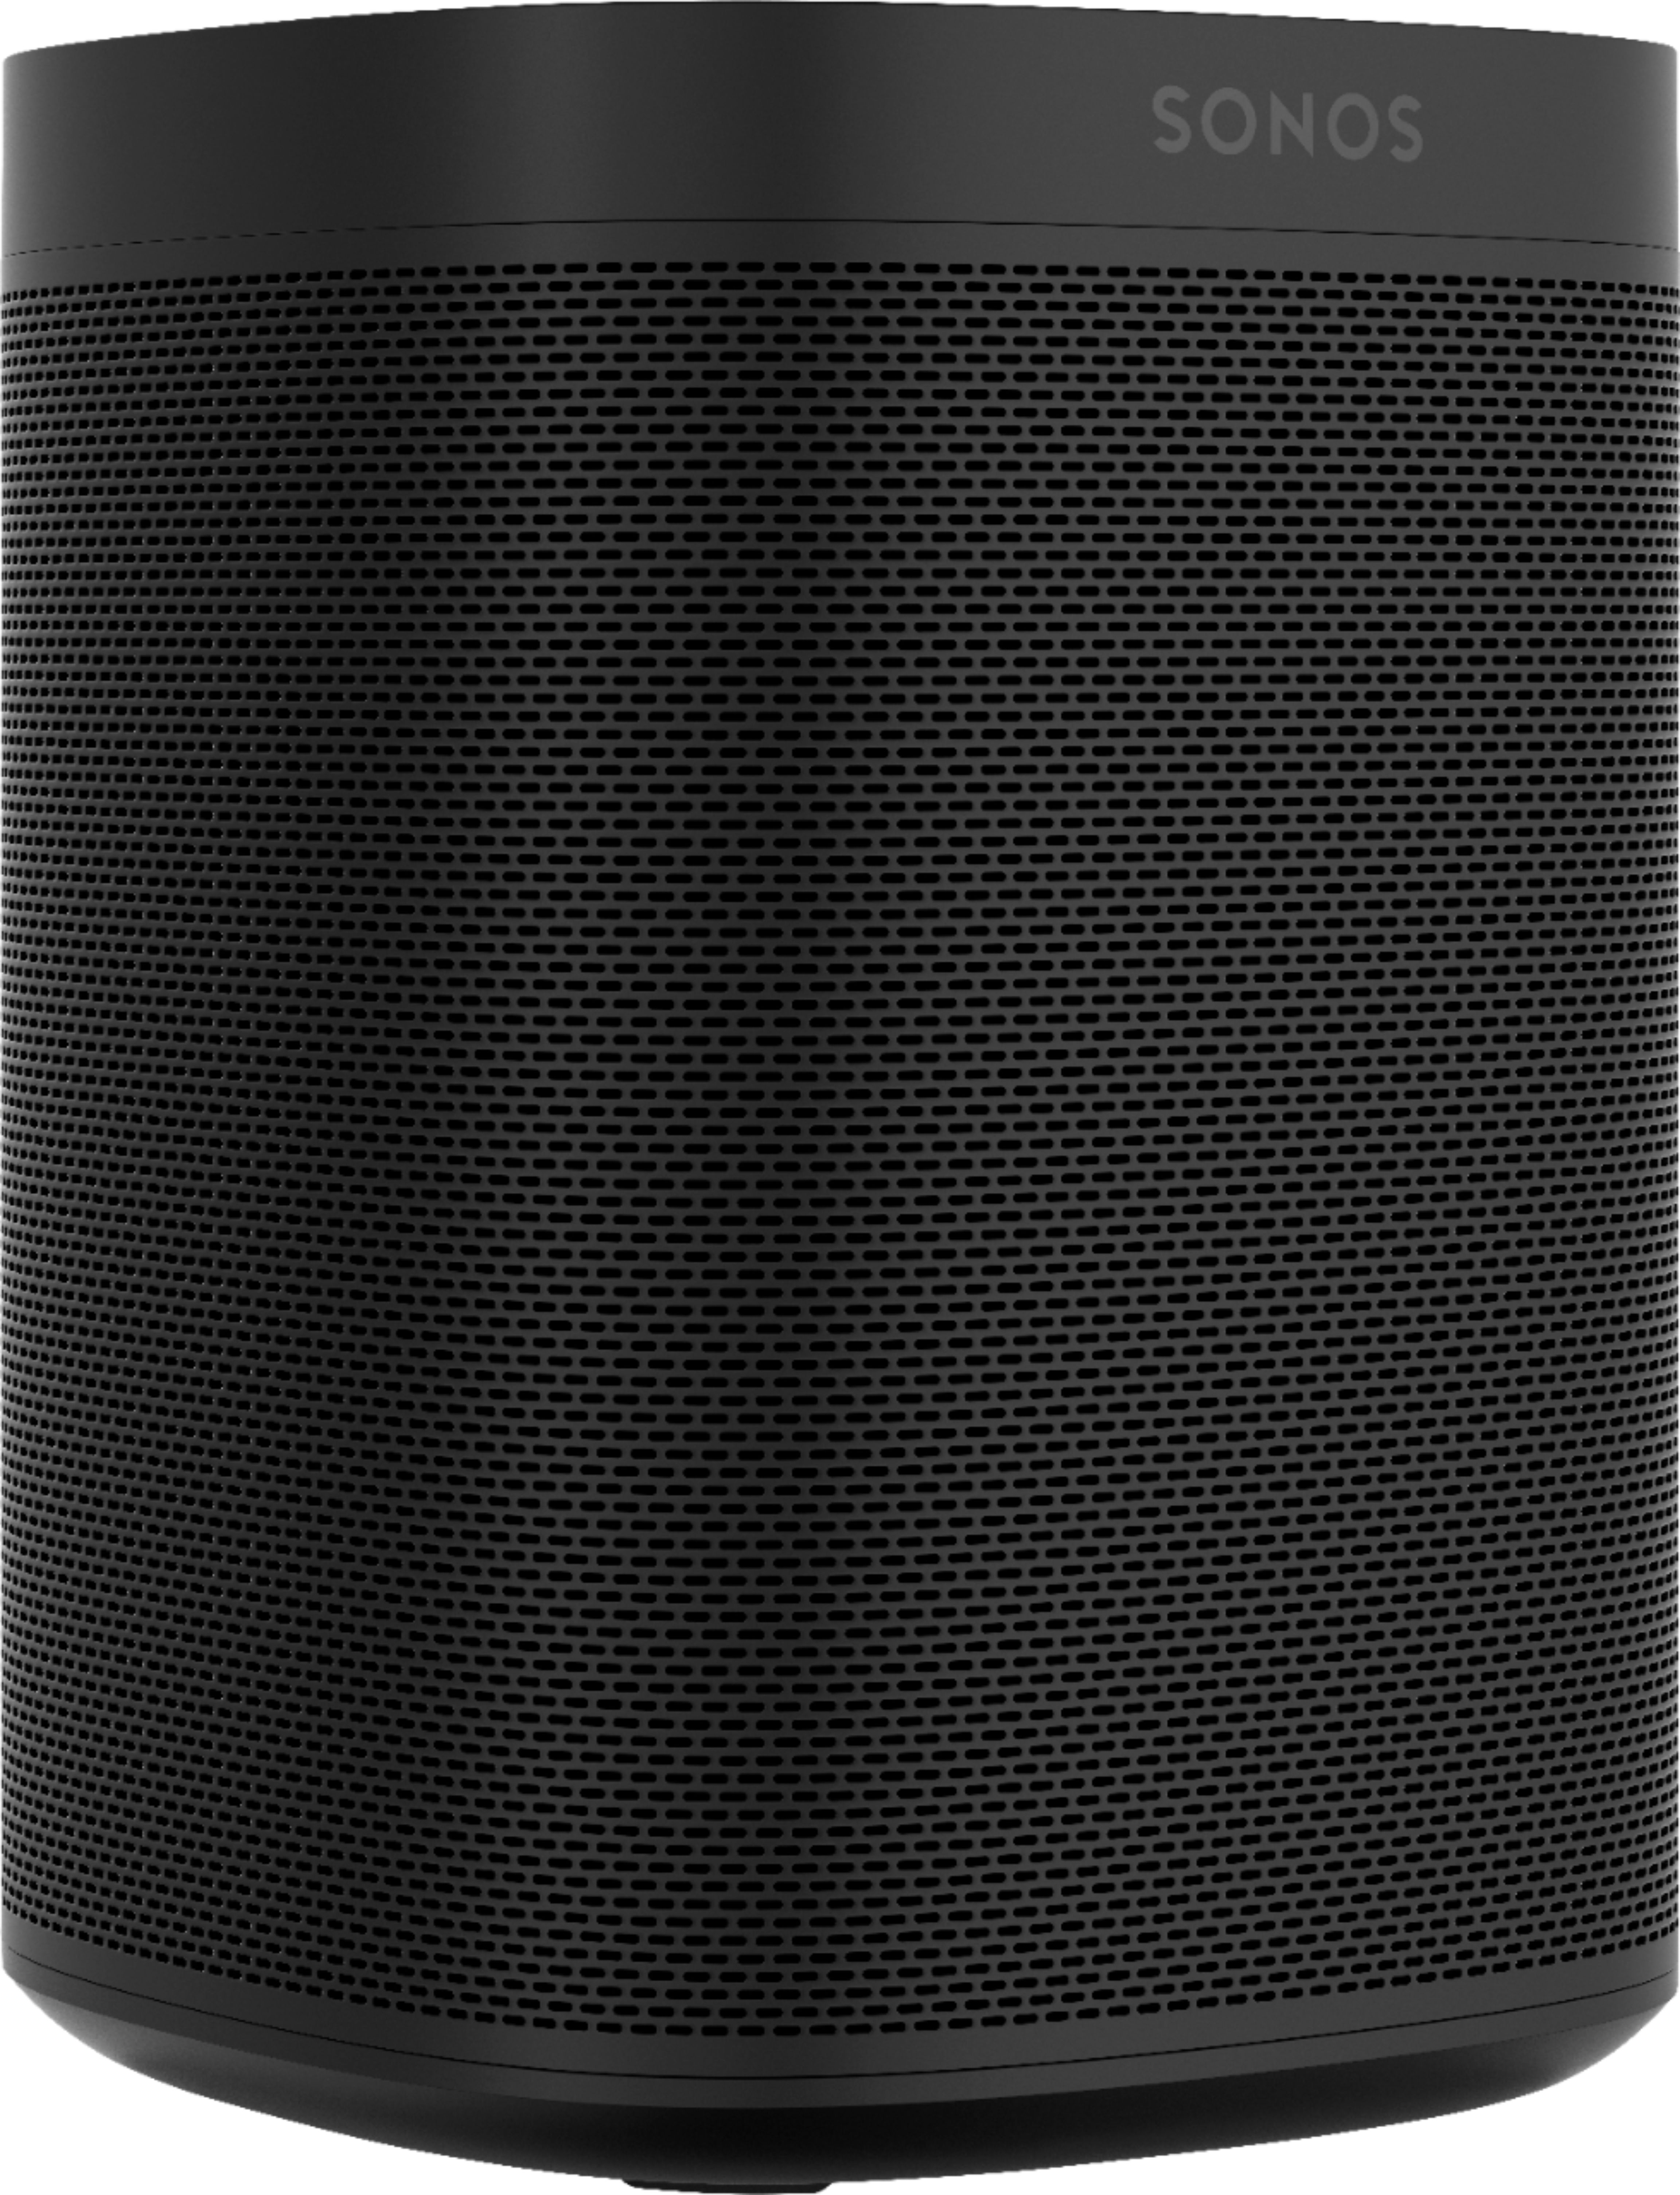 Sonos One SL Wireless Smart Speaker Black ONESLUS1BLK - Best 